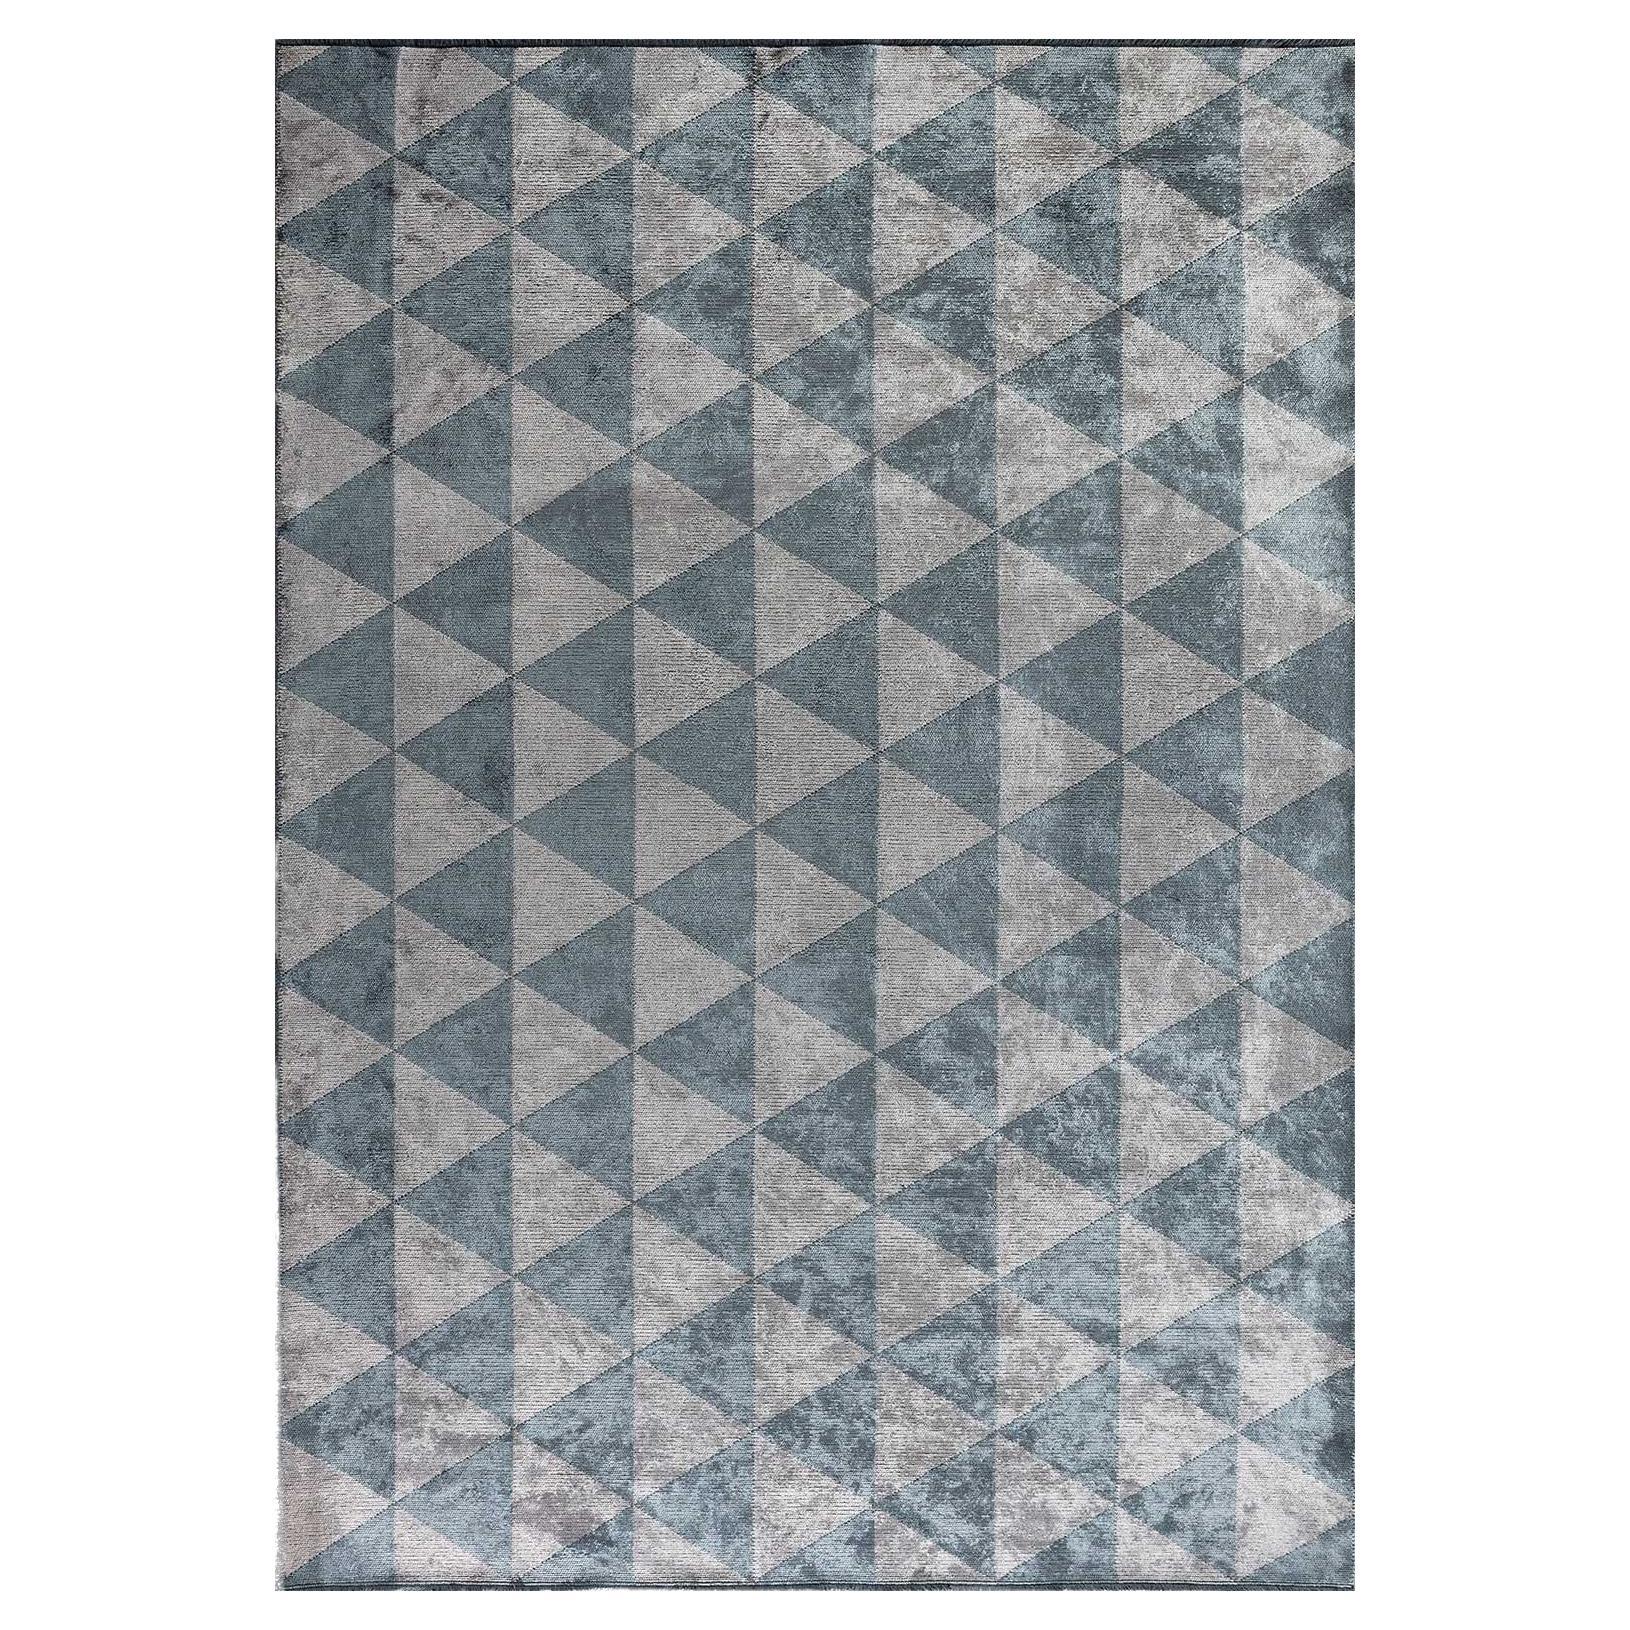 Tapis gris argenté, bleu clair et triangle à motif géométrique en forme de diamant avec brillance